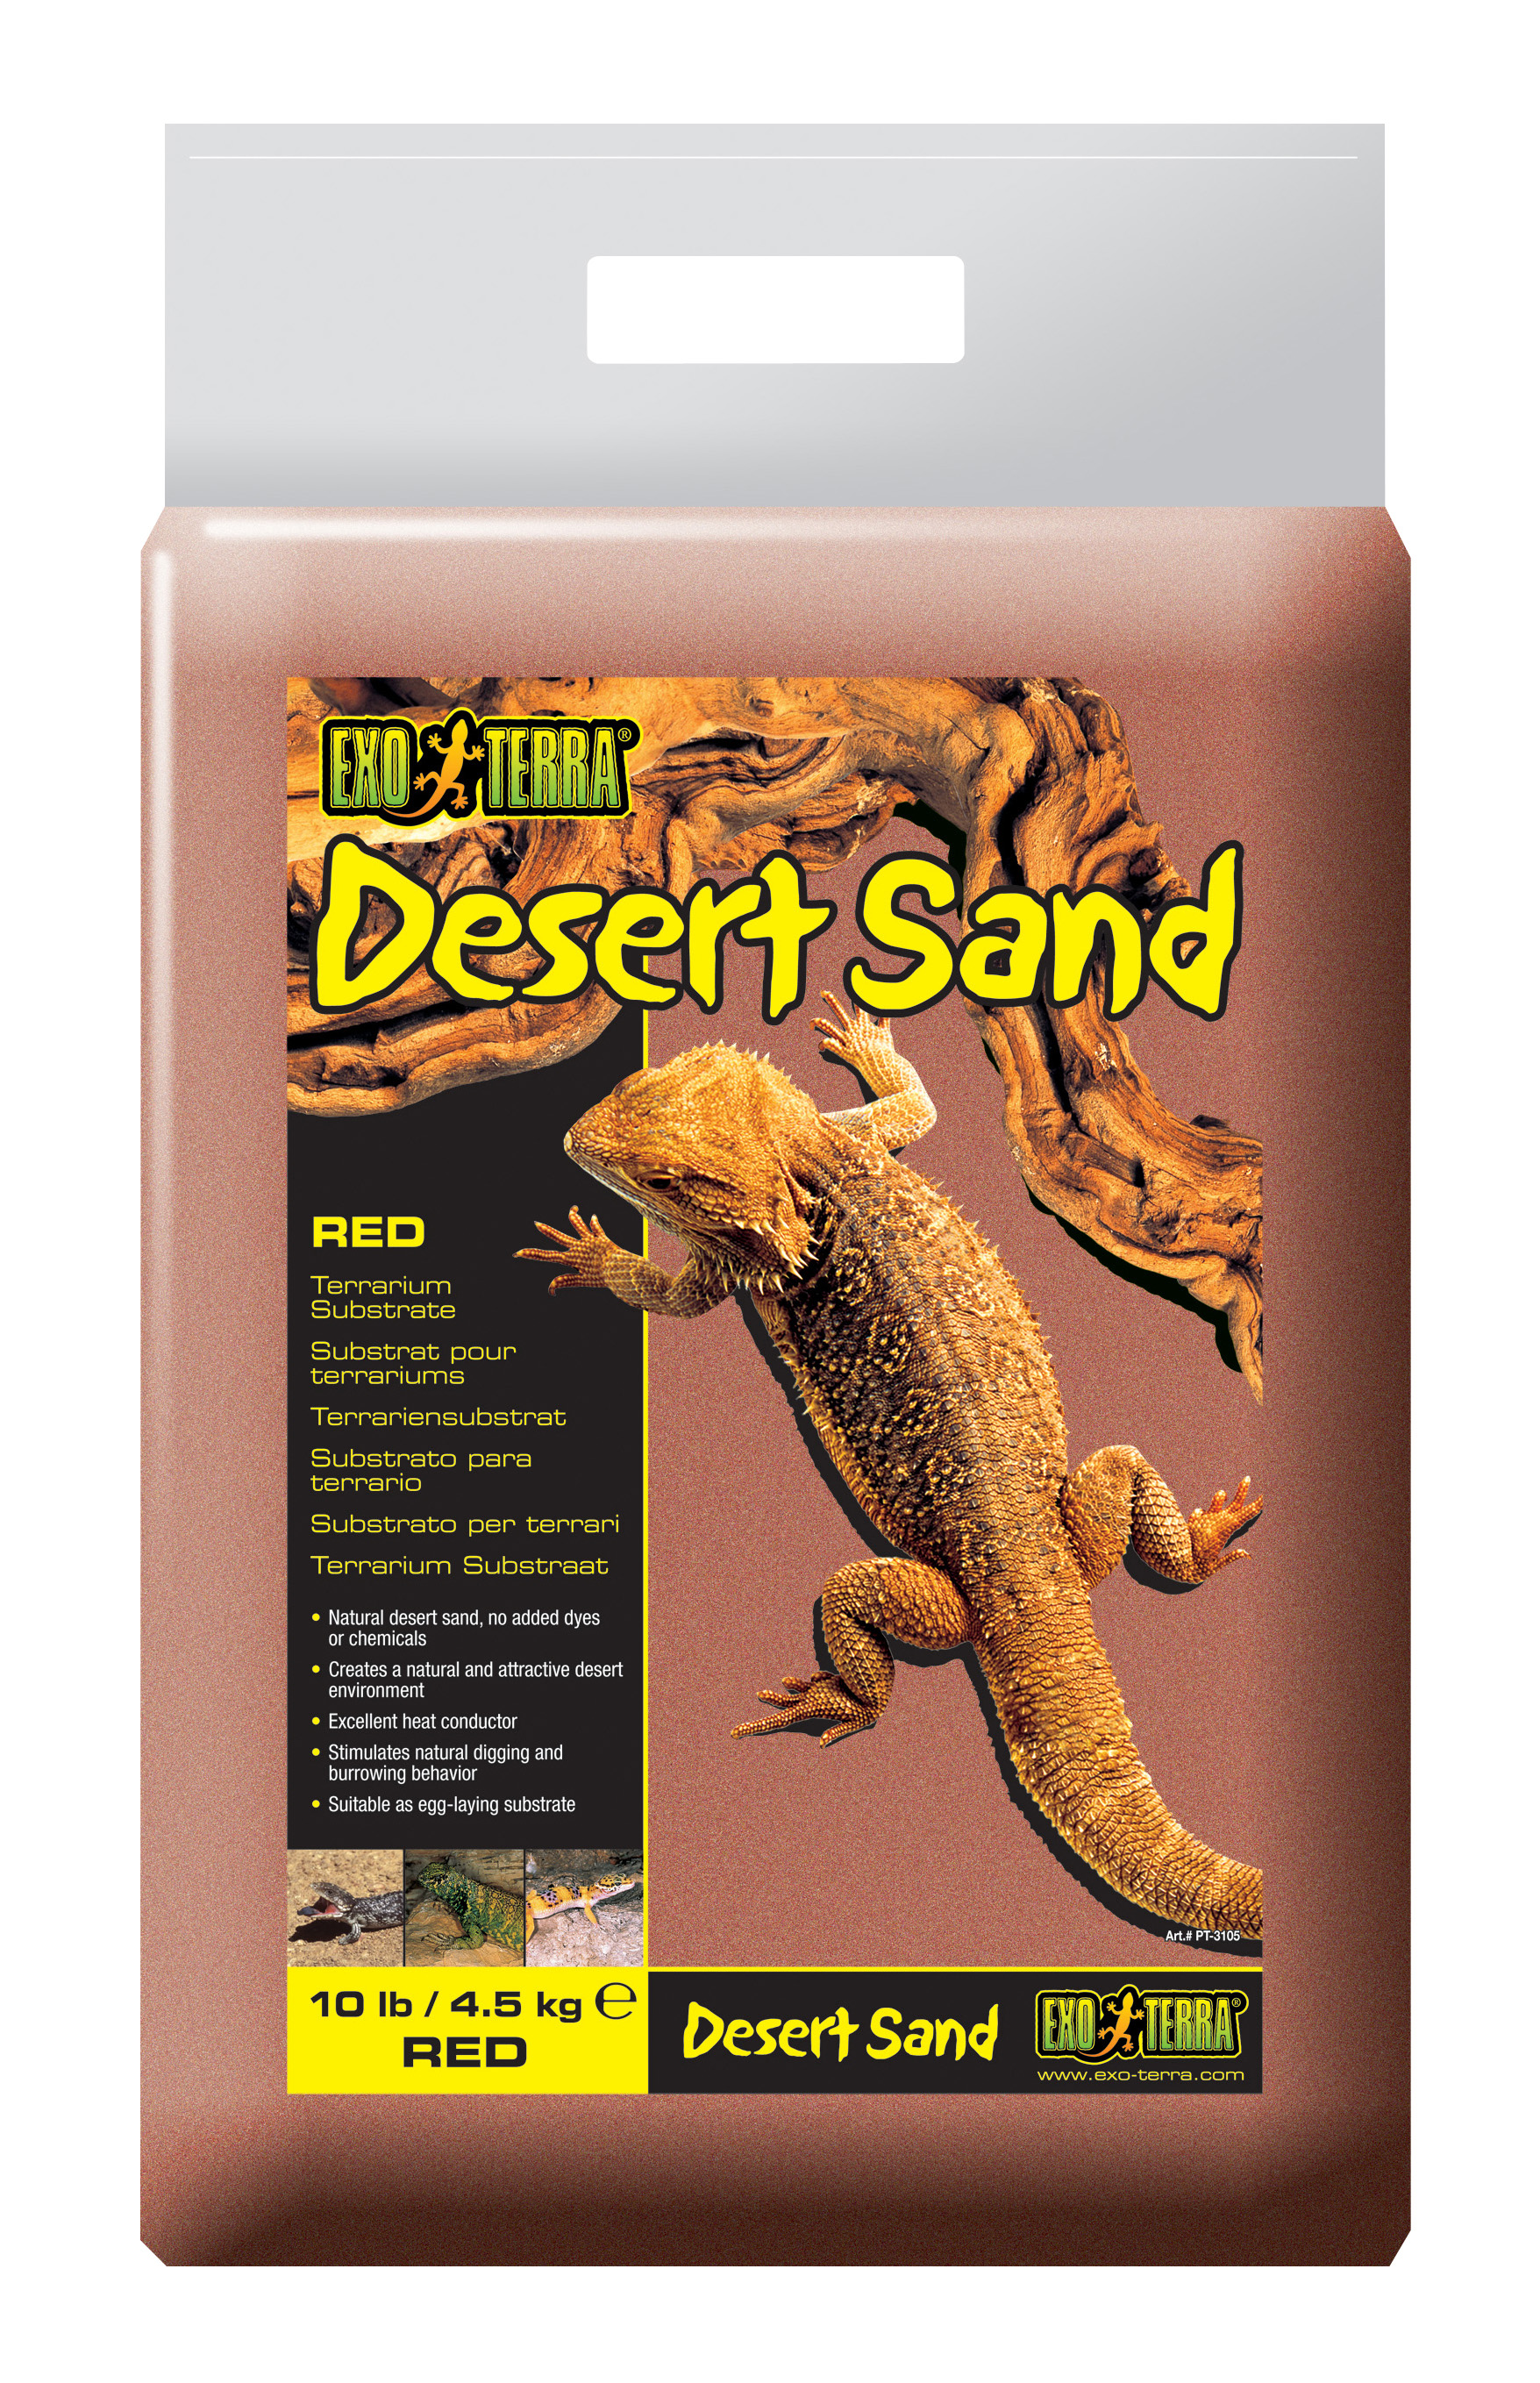 Ex desert sand gravel red - Product shot